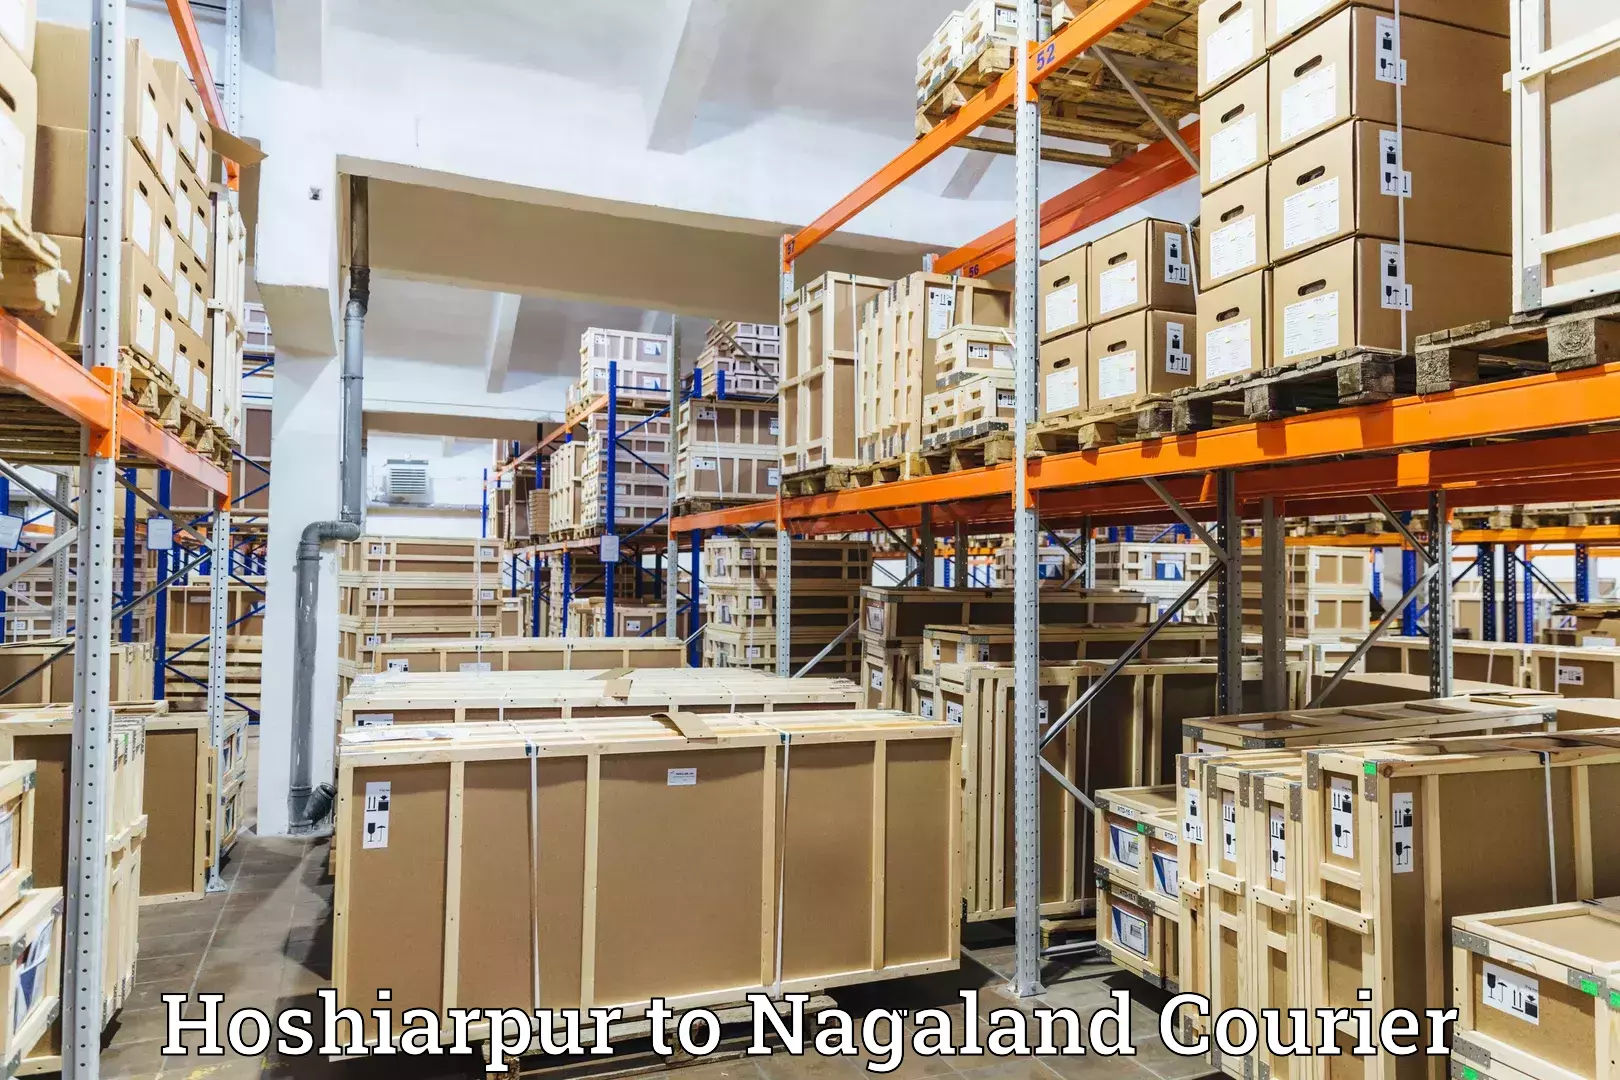 24/7 courier service Hoshiarpur to Nagaland